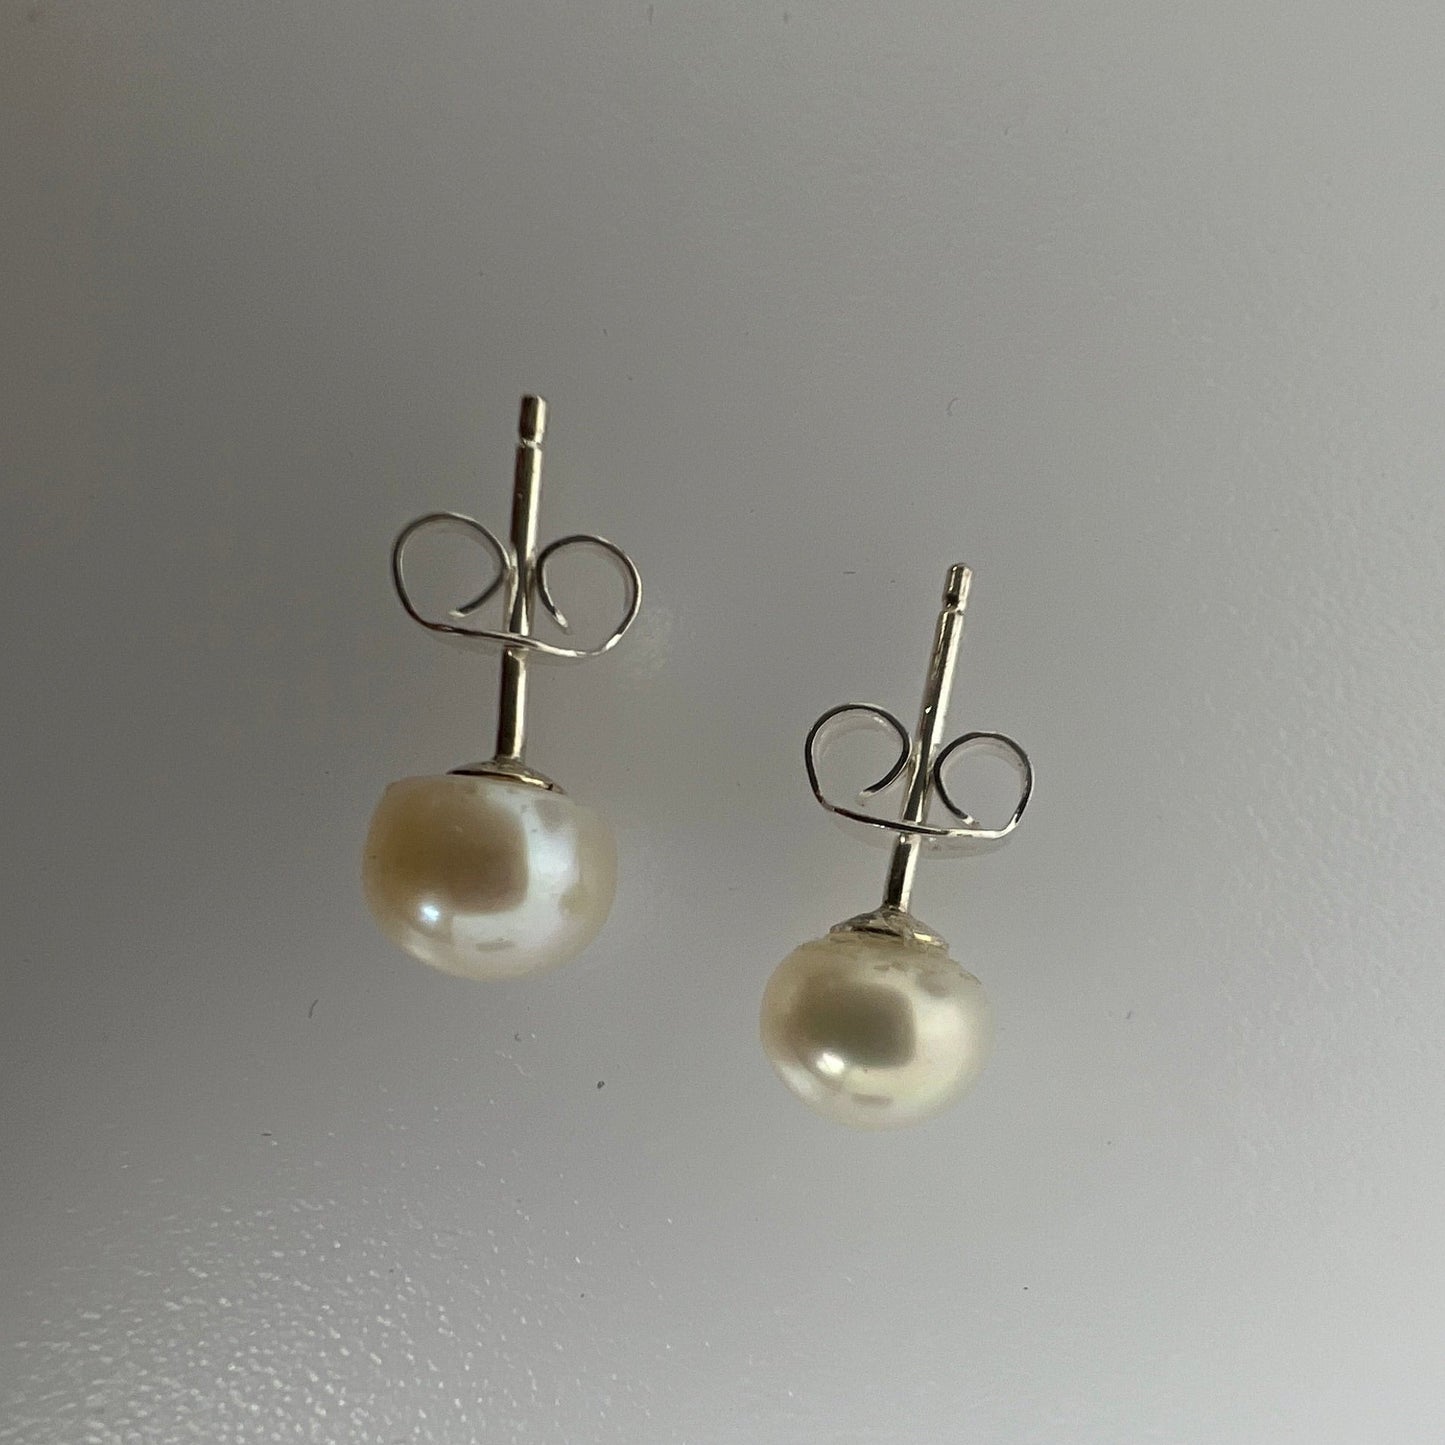 6mm Freshwater Pearl stud earrings